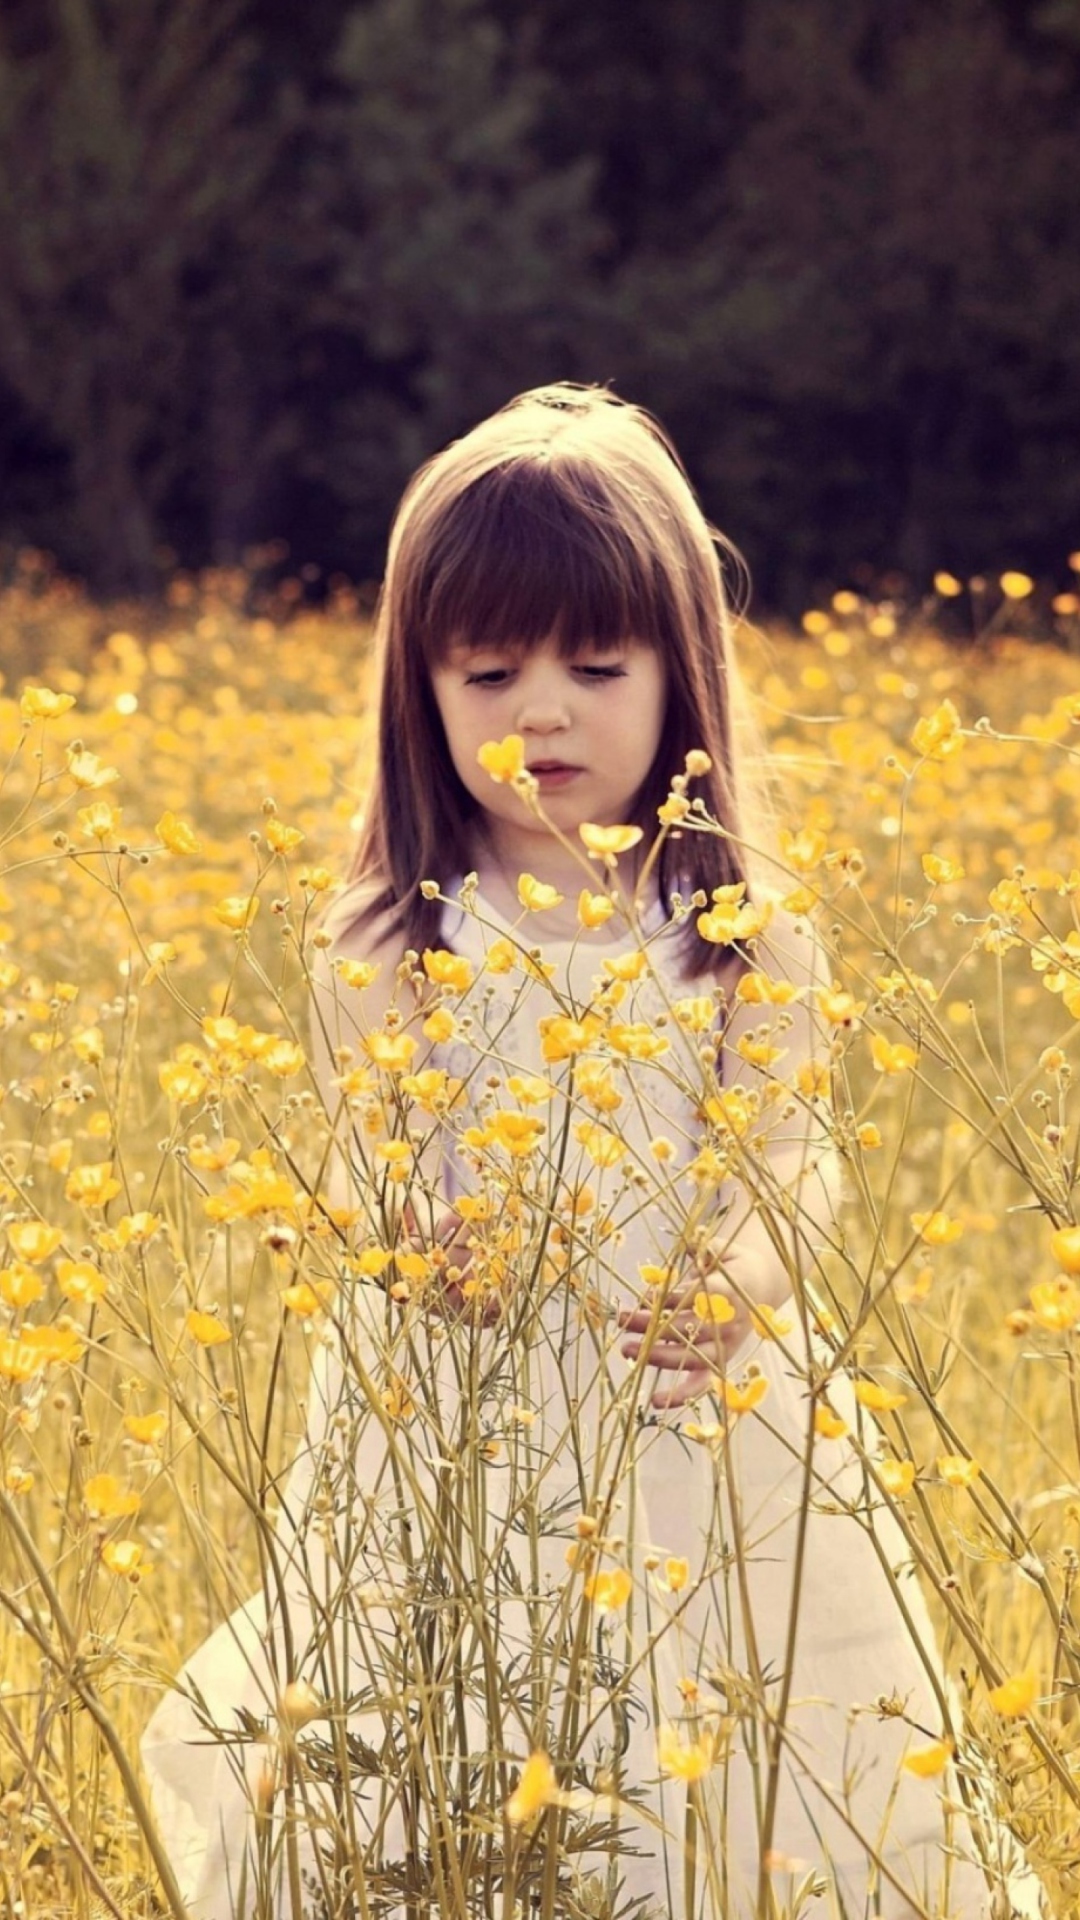 Das Cute Little Girl In Flower Field Wallpaper 1080x1920